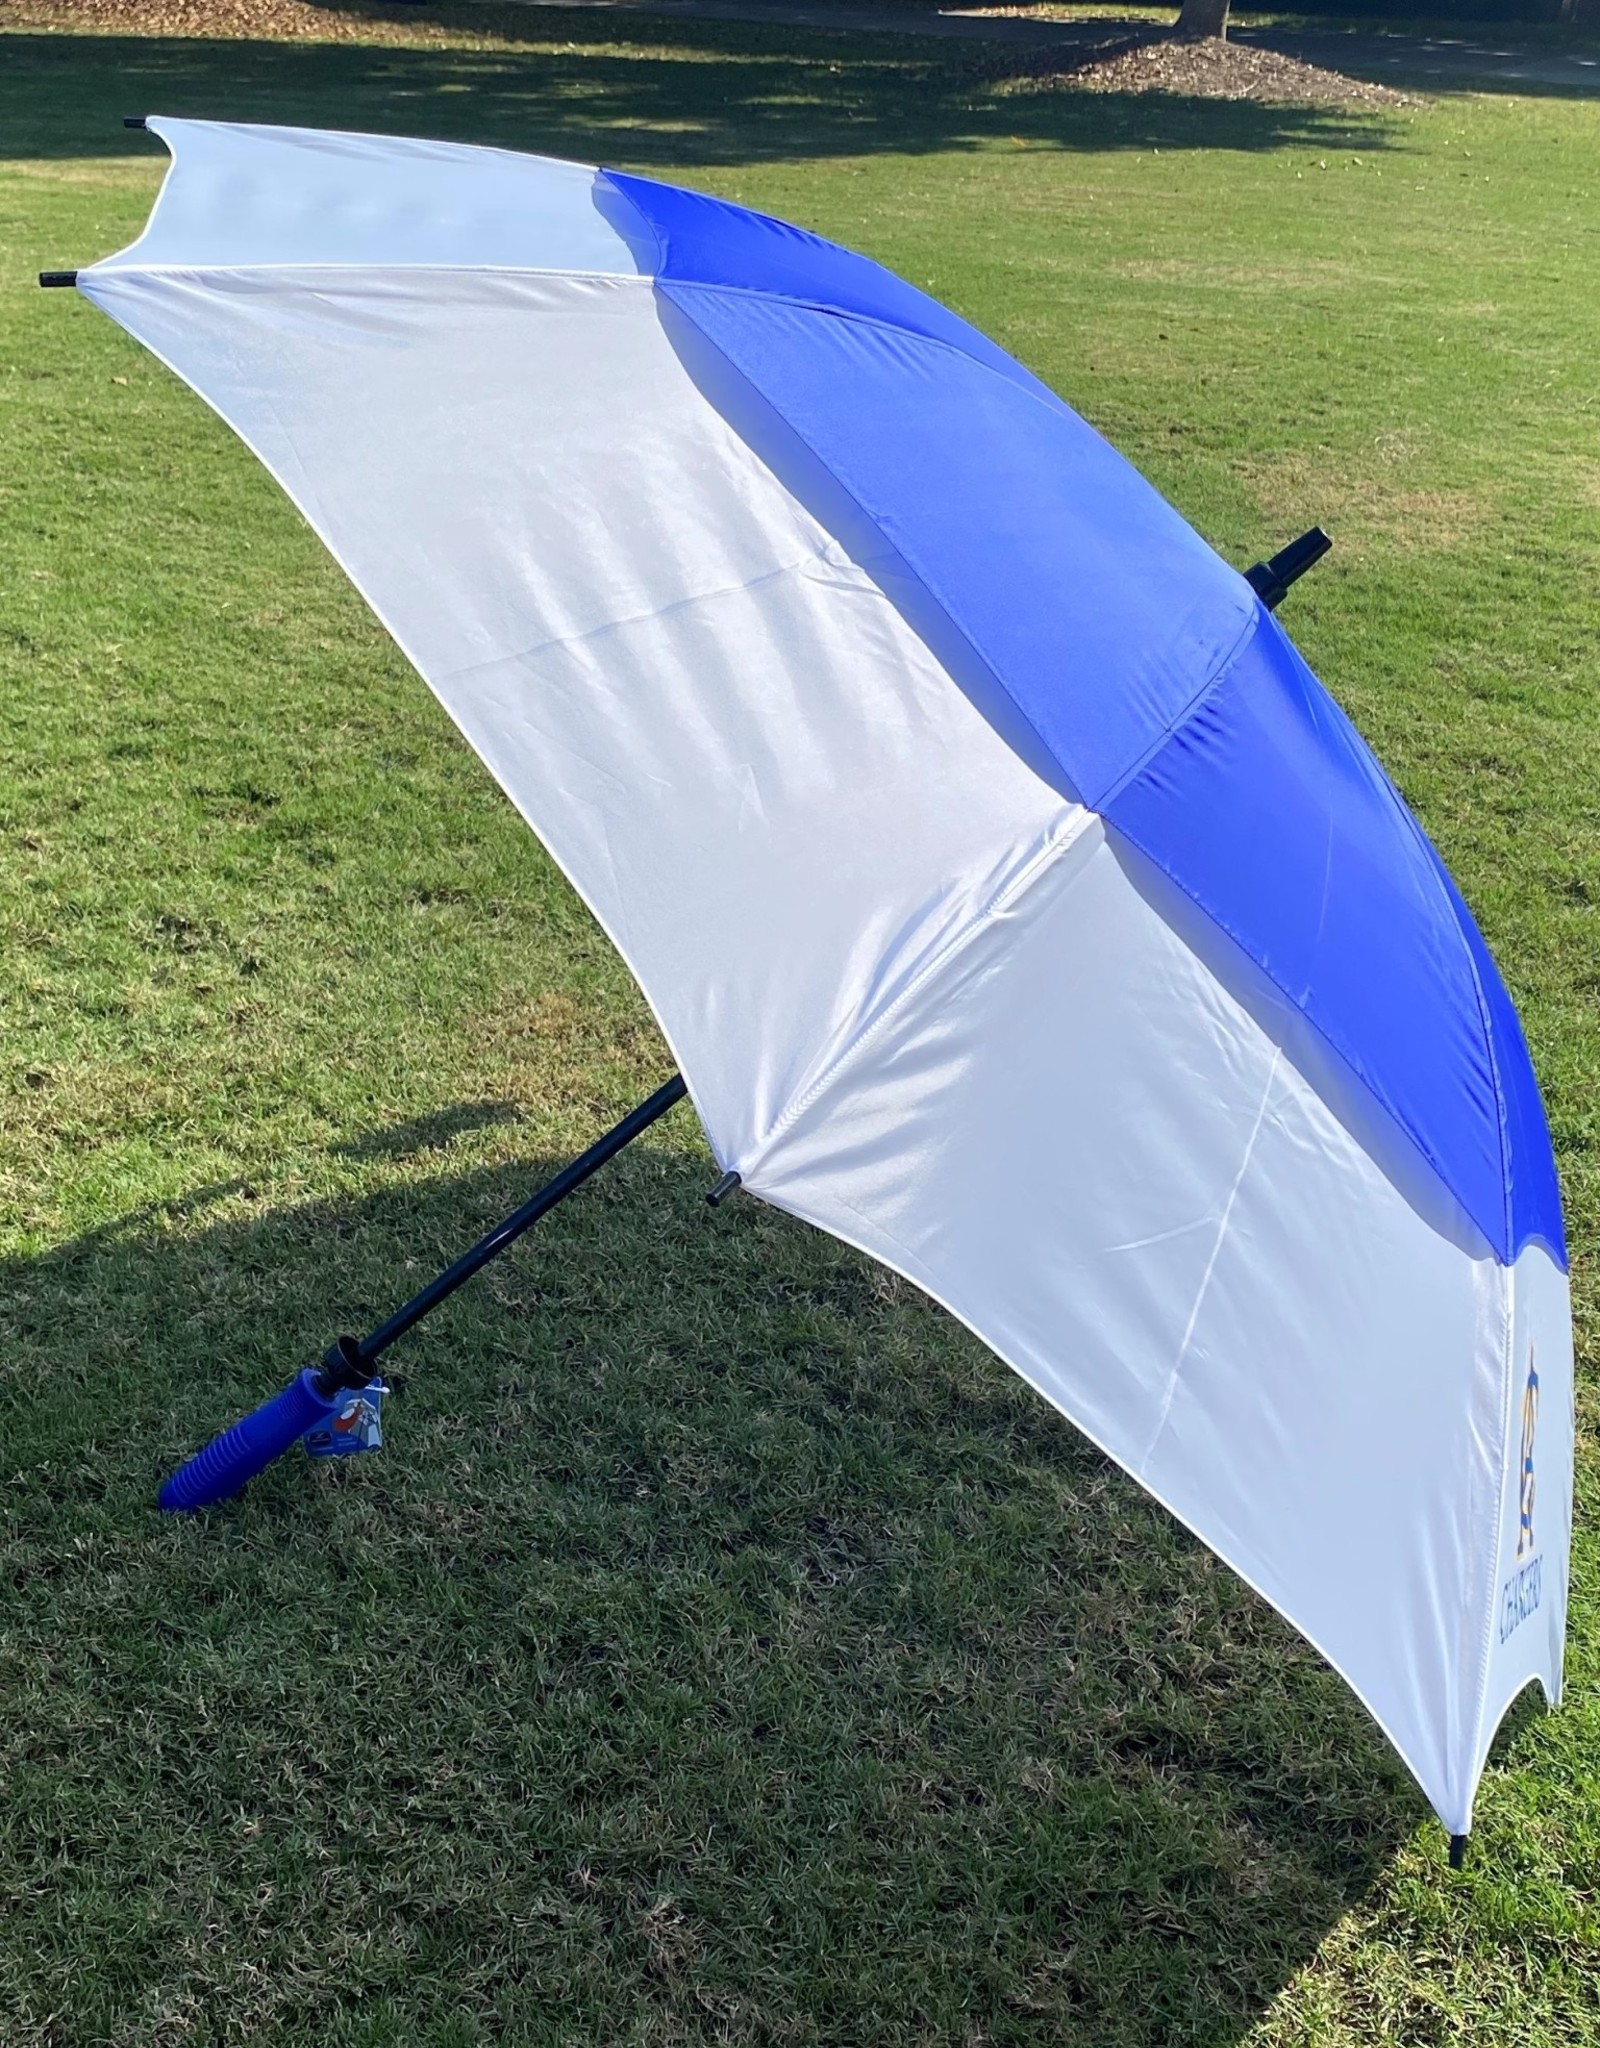 Golf Umbrella, CA Chargers